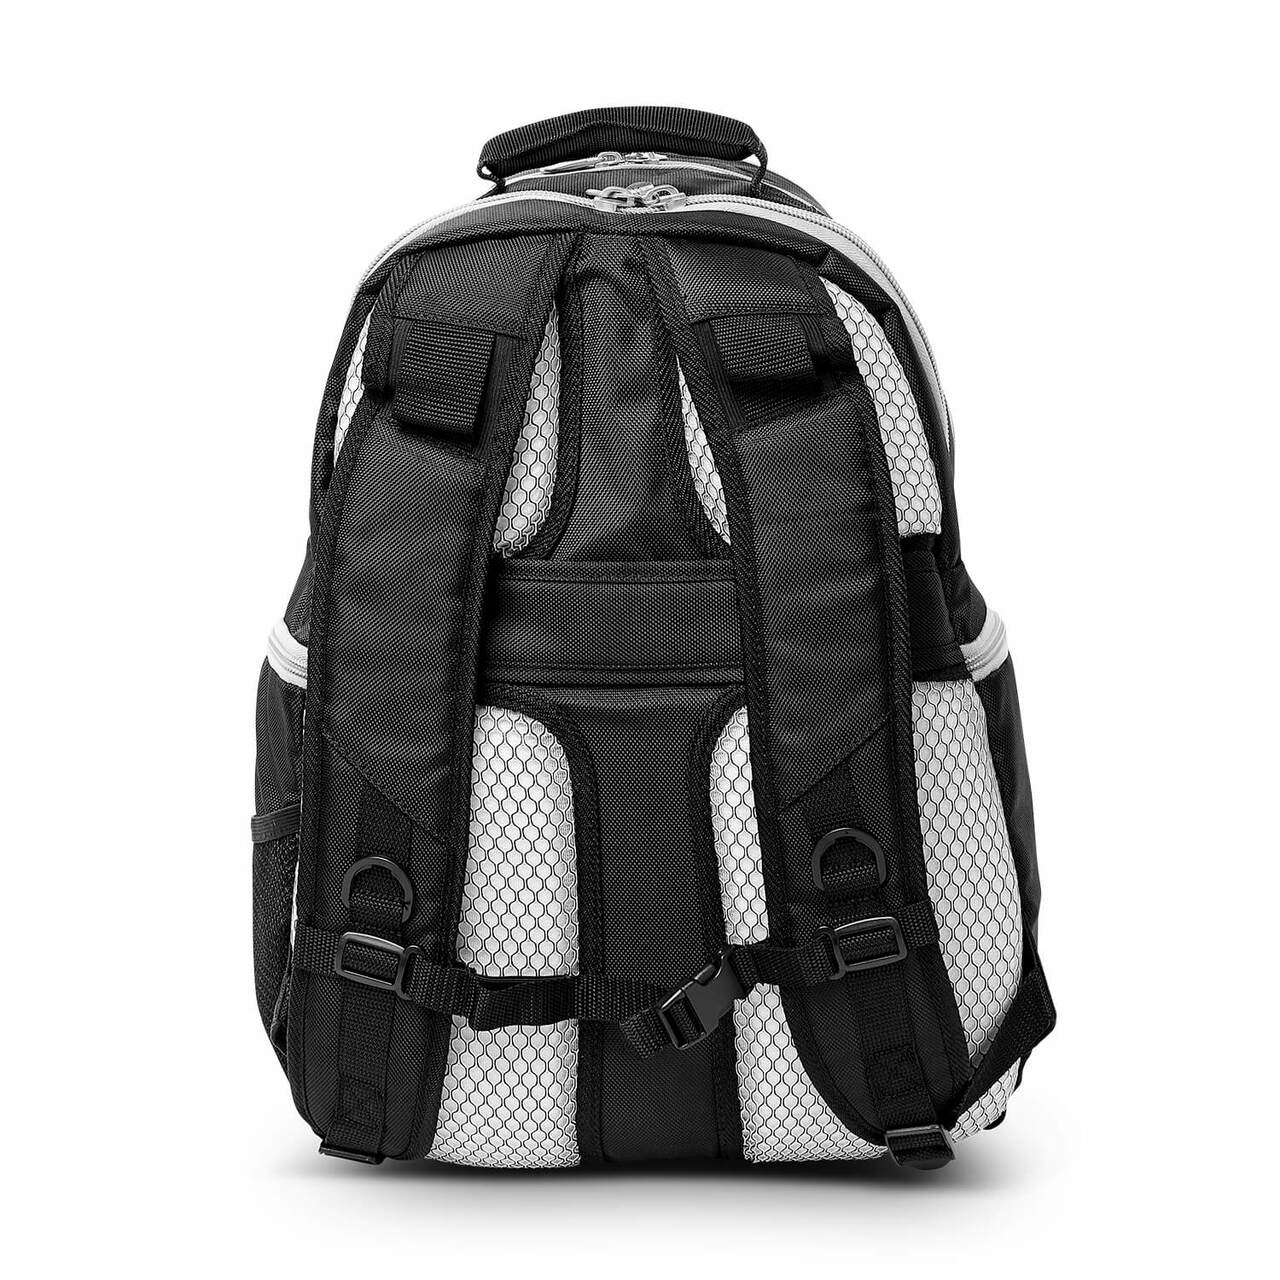 Buckeyes Backpack |Ohio State Buckeyes Laptop Backpack